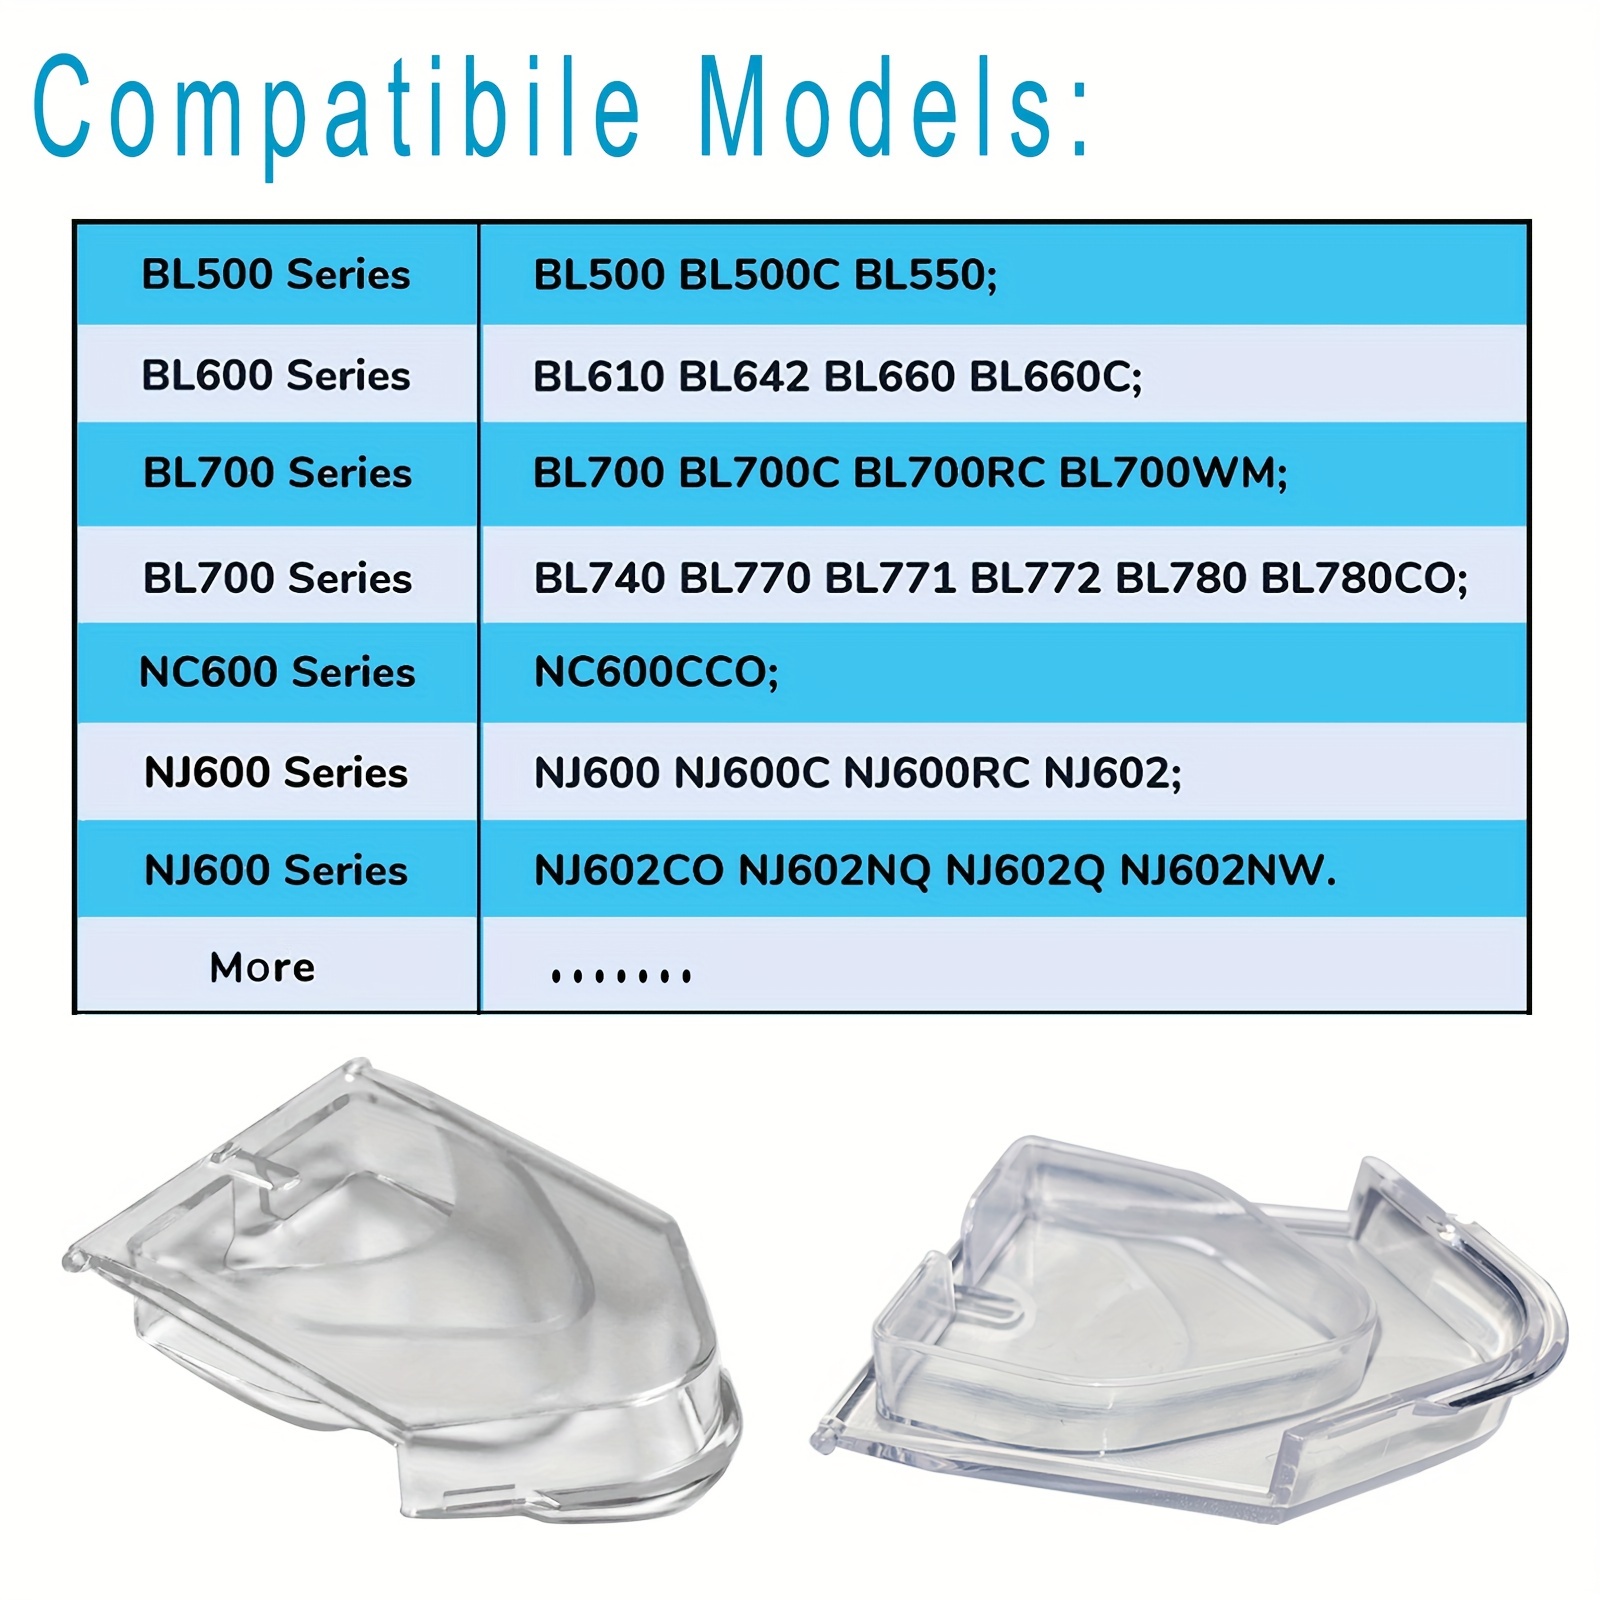 Transparent Blender Pour Spout Cover Flap Lid Jar Top Replacement Part For  Ninja Nj600 Nj602 For Bl500 Bl781 - Blender Parts - AliExpress